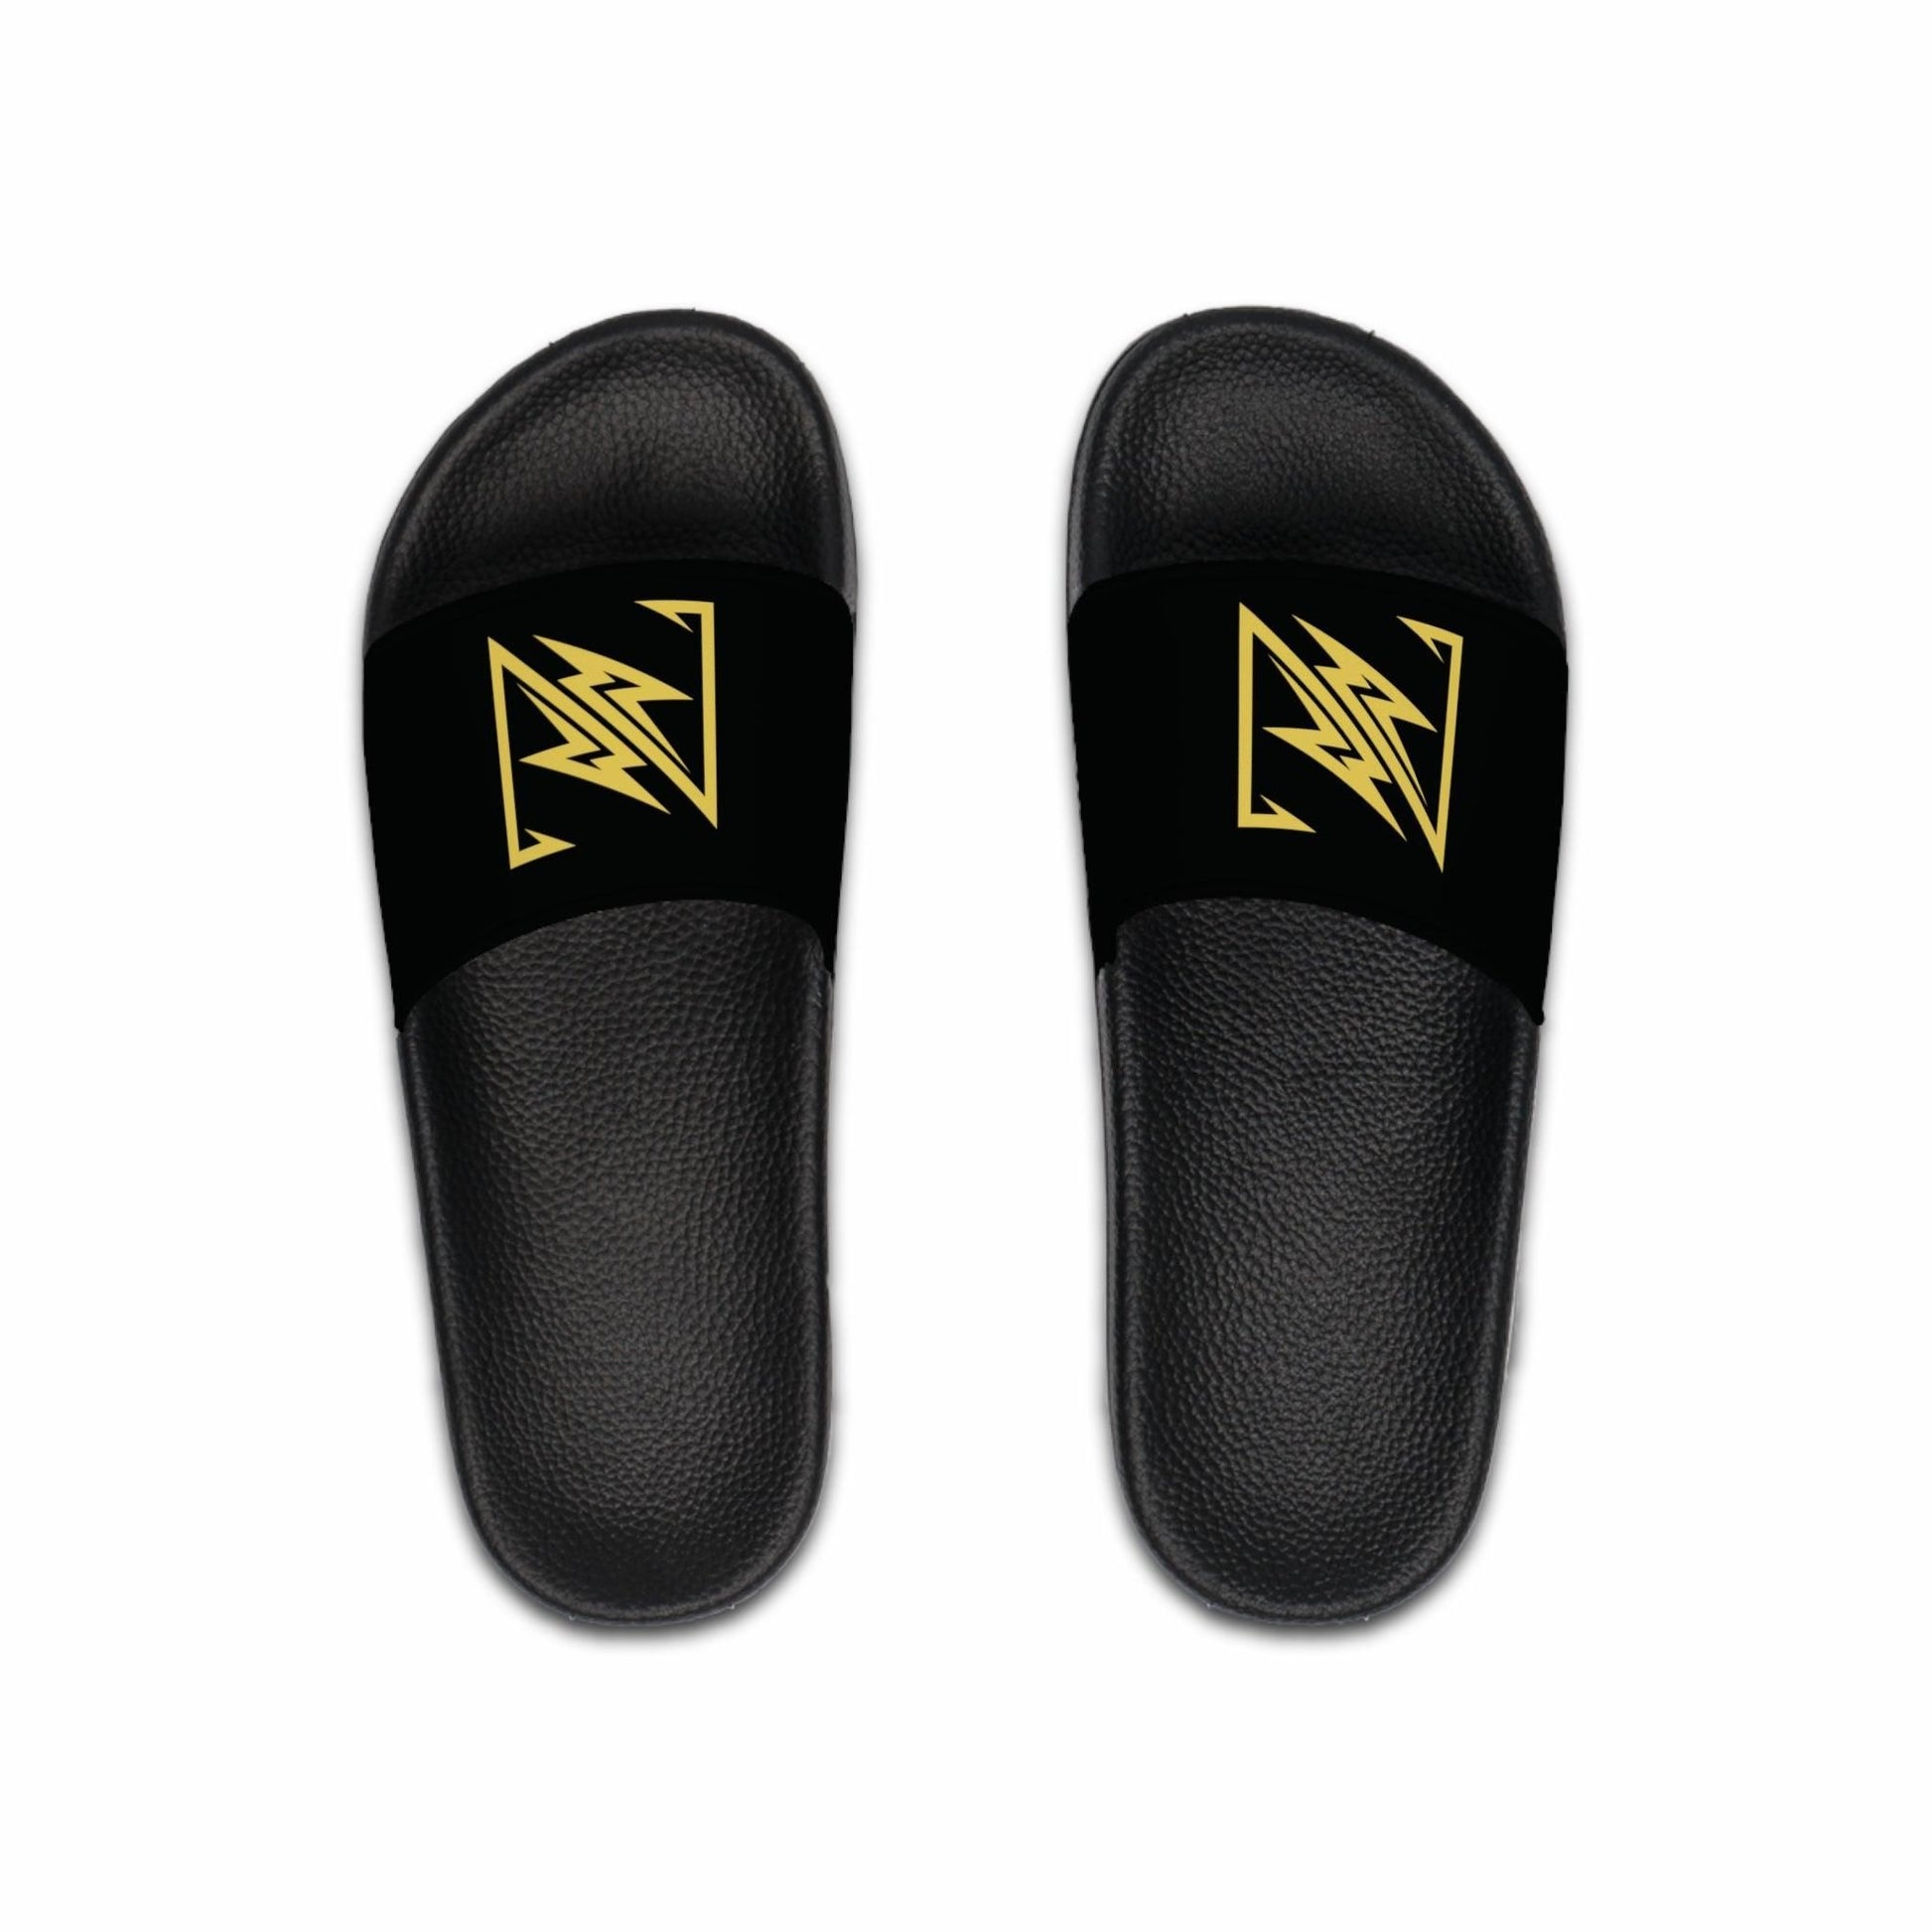 nx vogue Men's Slide Sandals Shoes Black sole US 9 